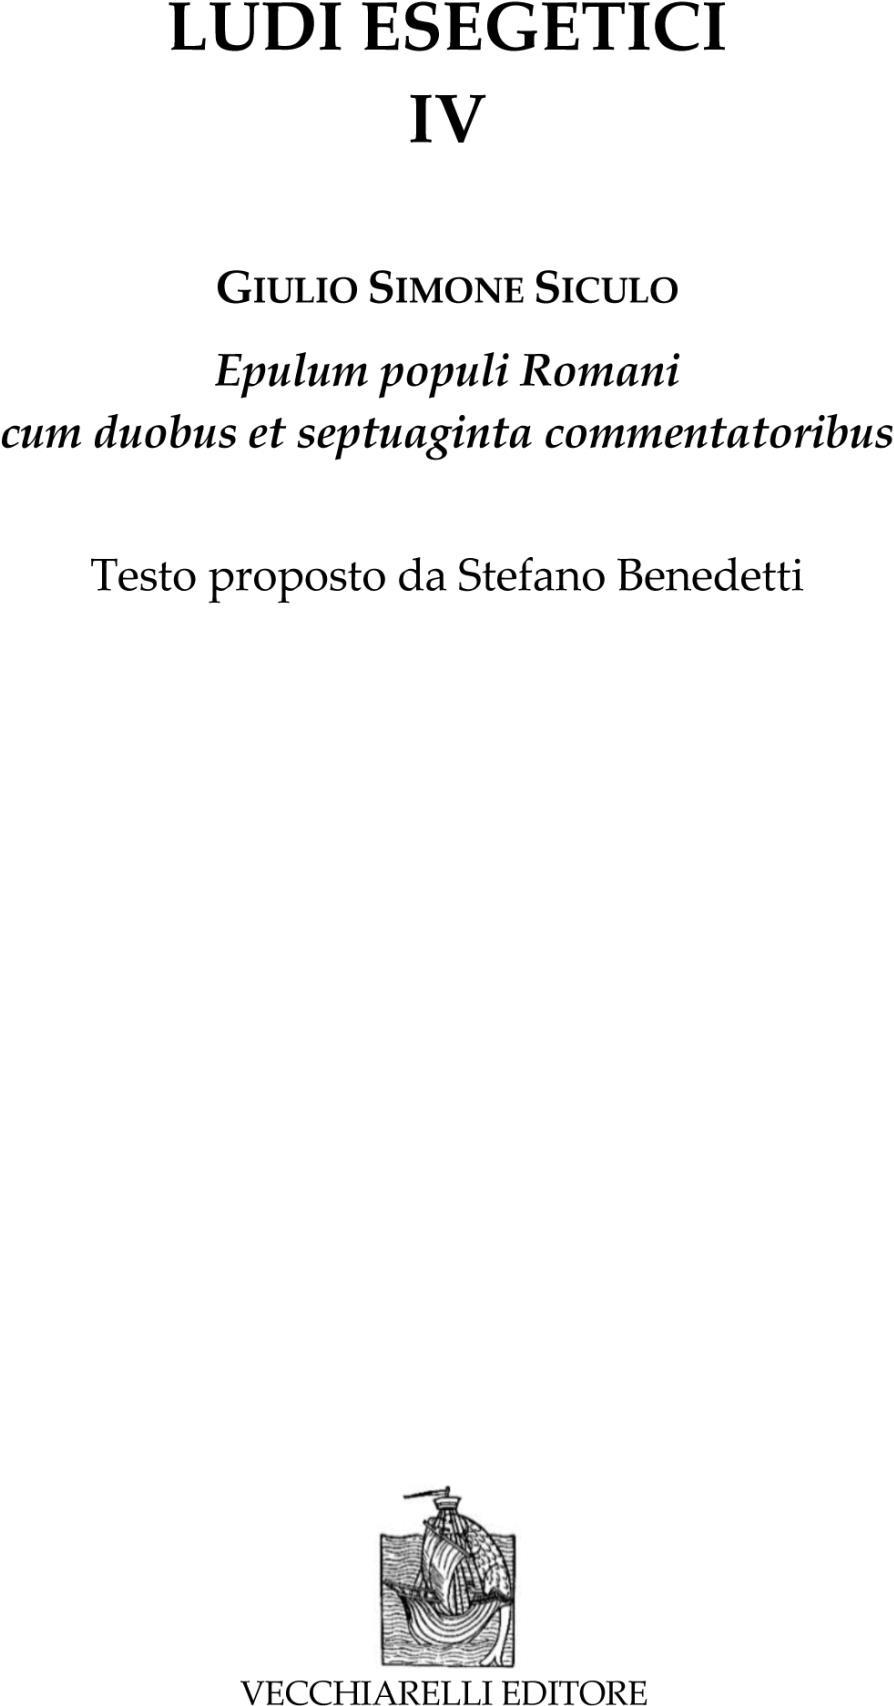 Libri Siculo Giulio Simone - Ludi Esegetici Vol 04 NUOVO SIGILLATO, EDIZIONE DEL 01/01/2022 SUBITO DISPONIBILE